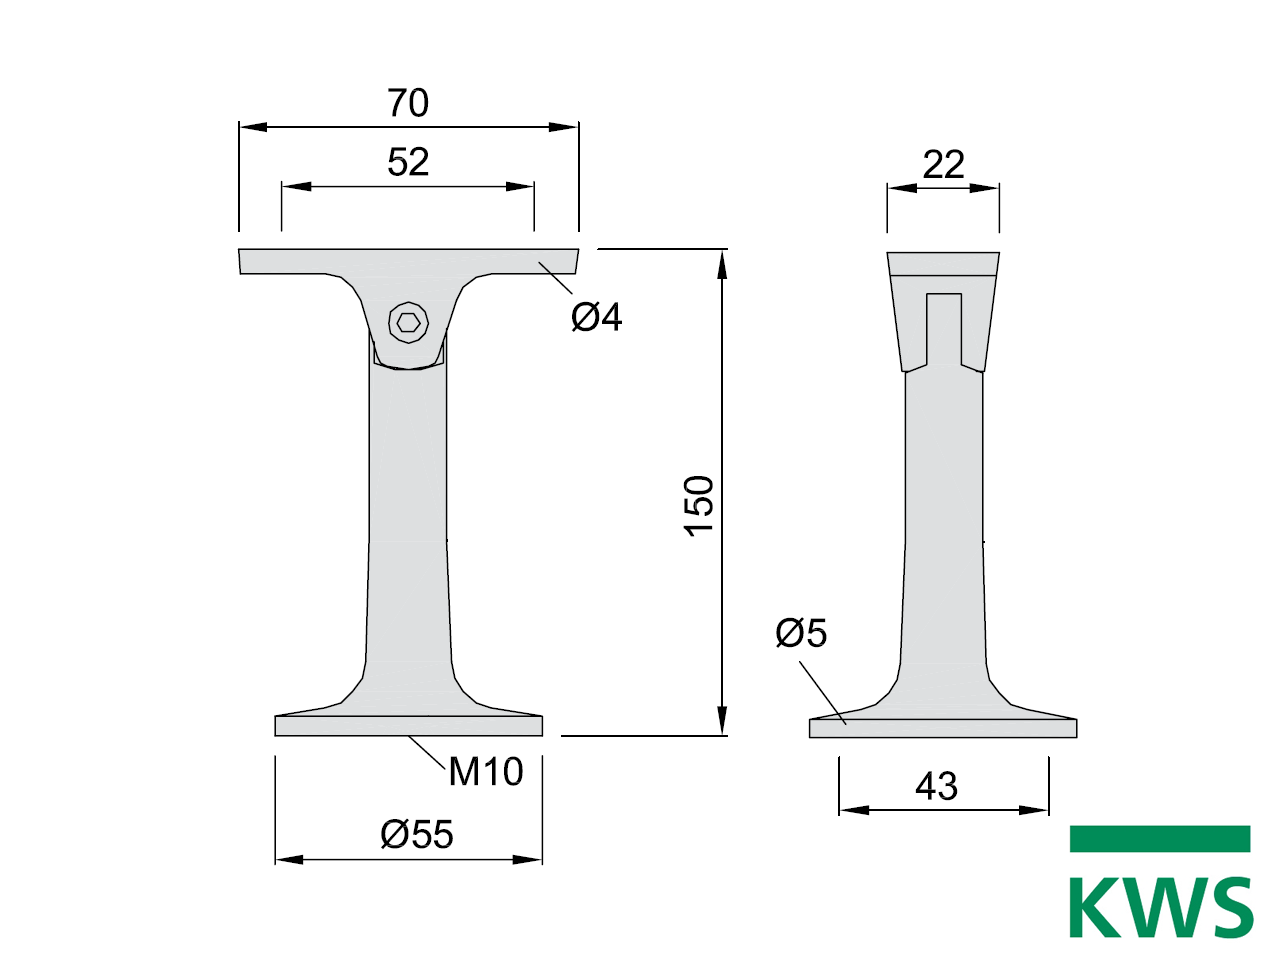 KWS 4599 Handlaufstütze - 150 mm Abstand